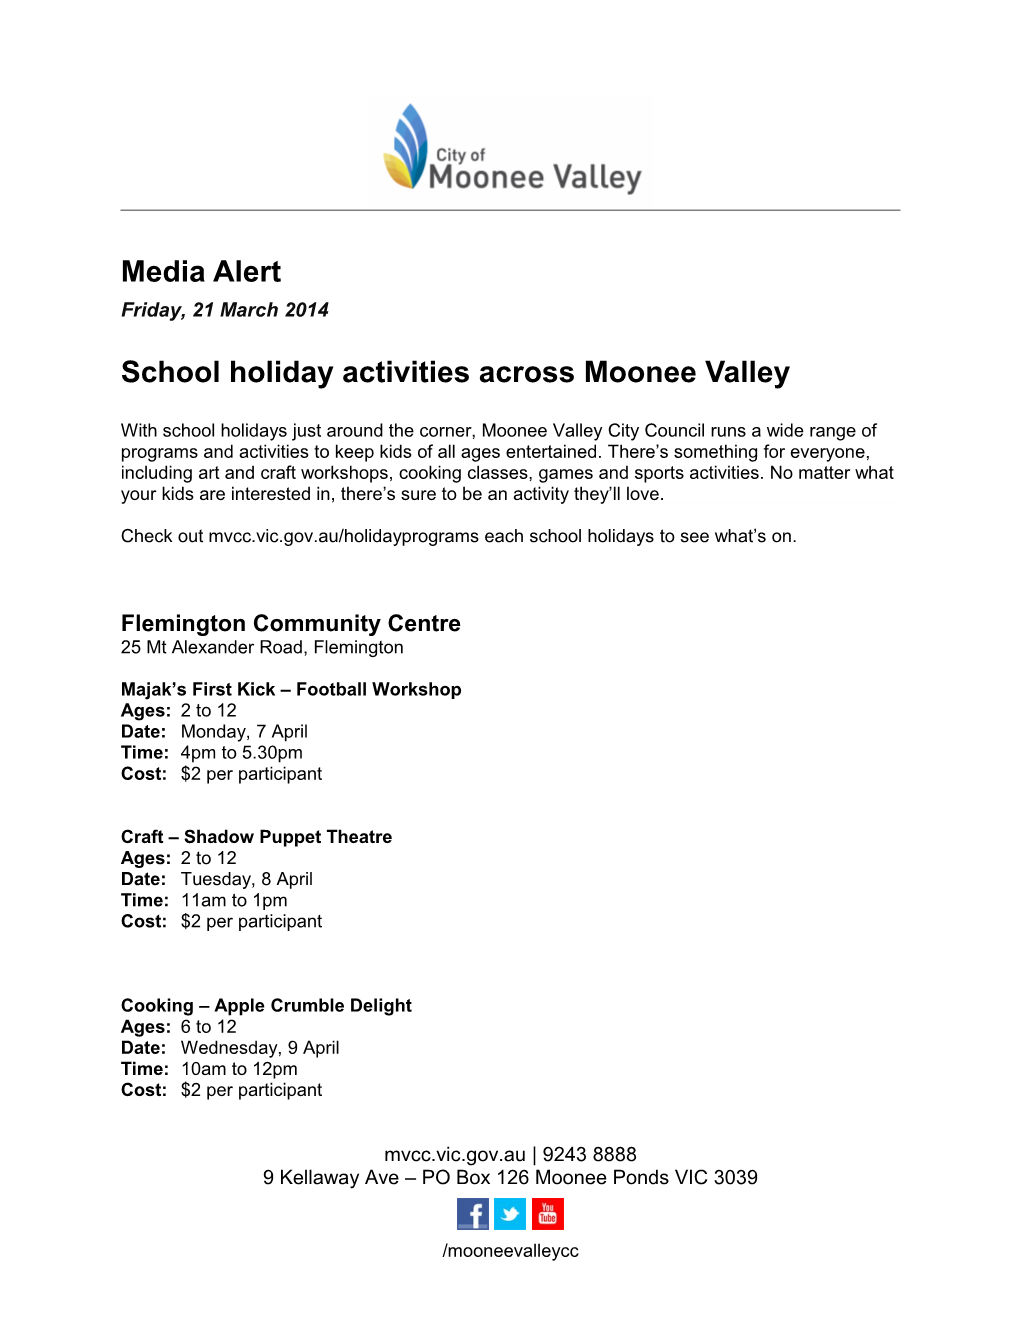 School Holiday Activities Across Moonee Valley